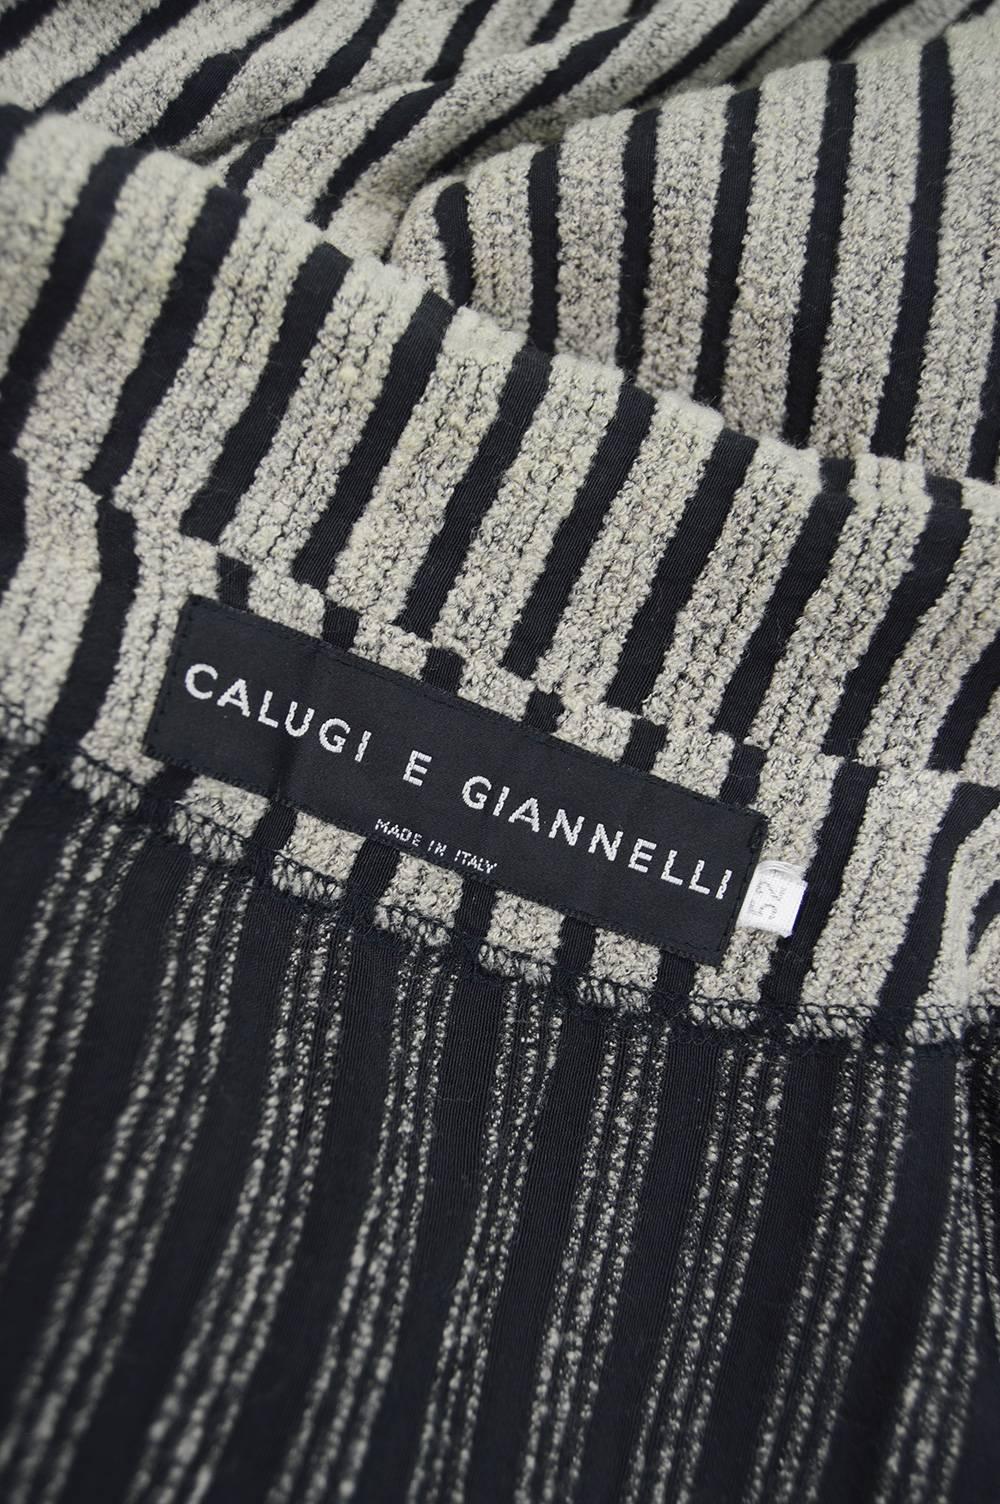 Calugi e Giannelli Vintage 1980s Mohair Chenille & Rayon Men's Oversized Blazer 4